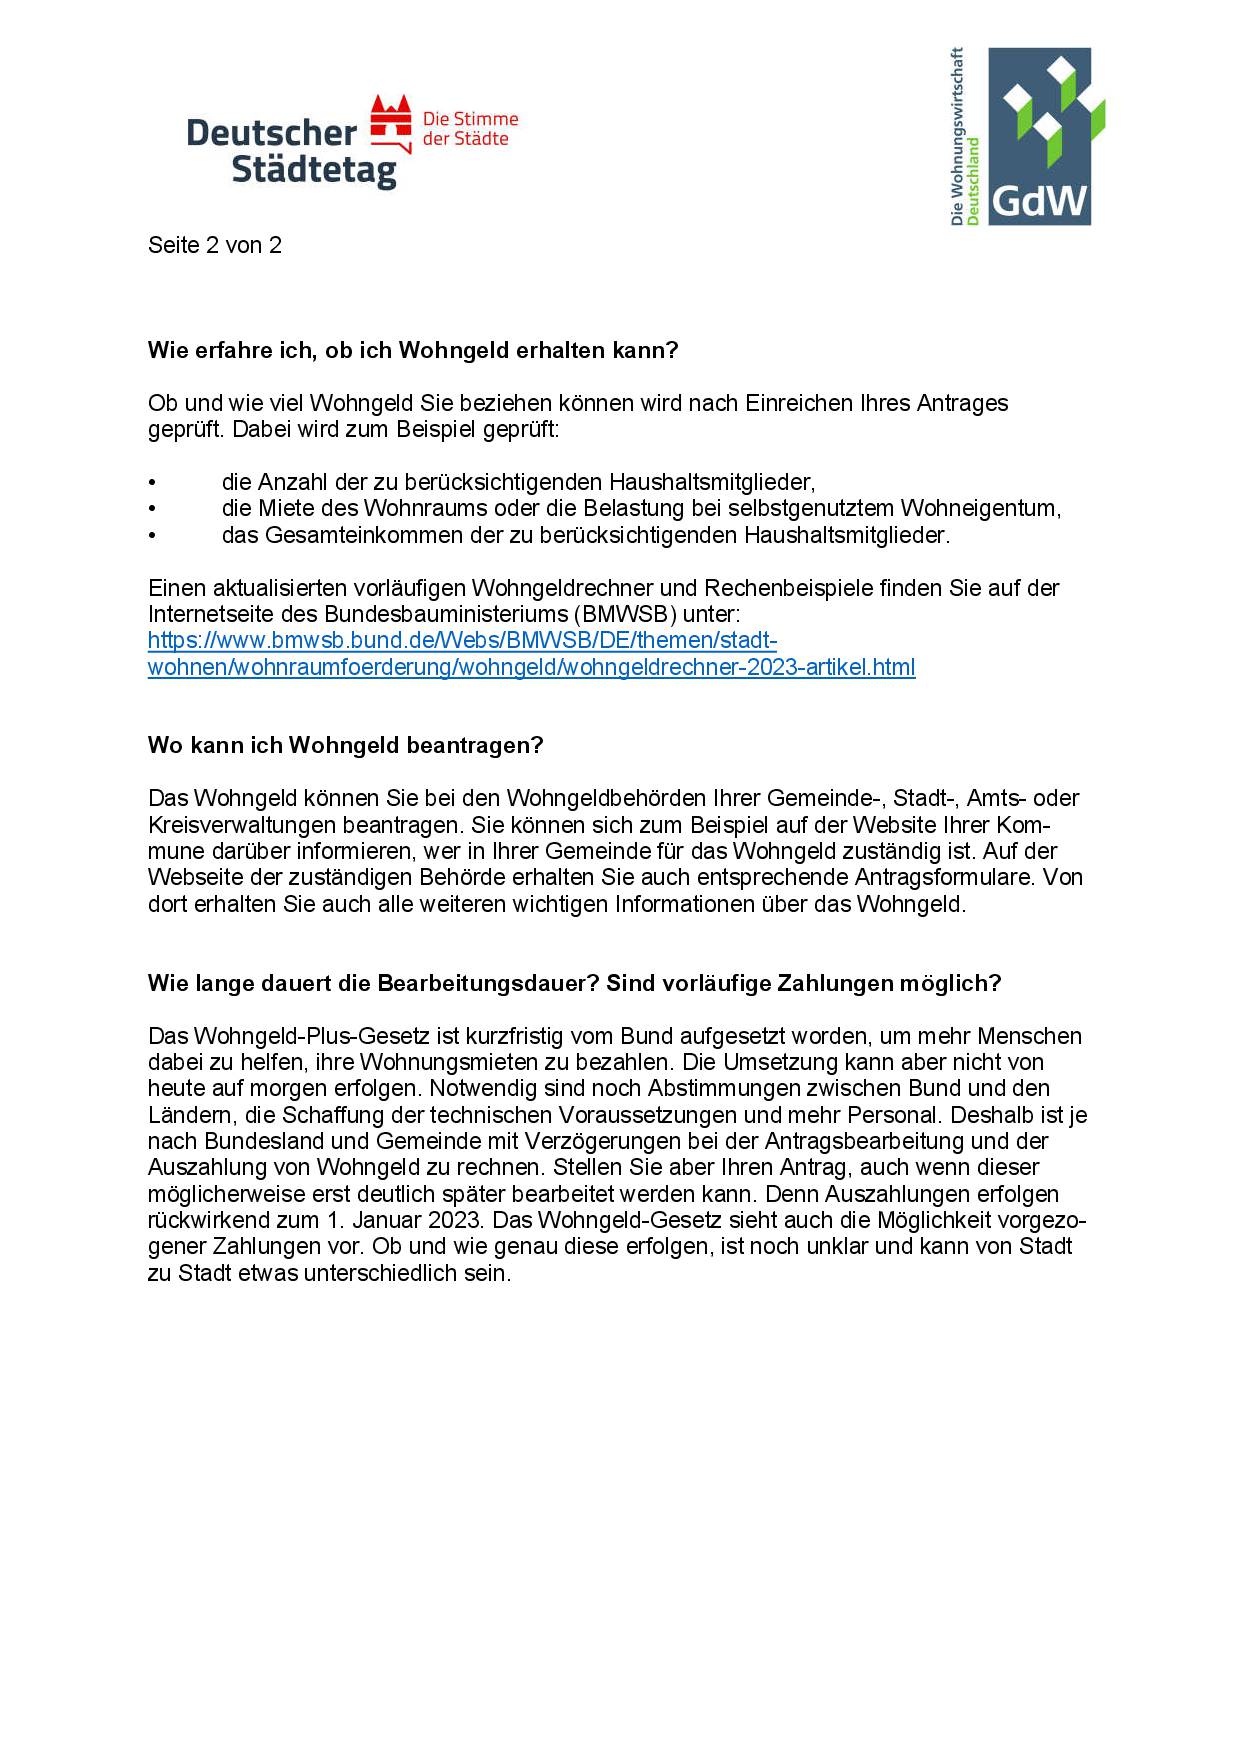 https://www.kwg-helmstedt.de/media/Wohngeld-Plus-Gesetz_Informationen_für_Mieter-002.jpg